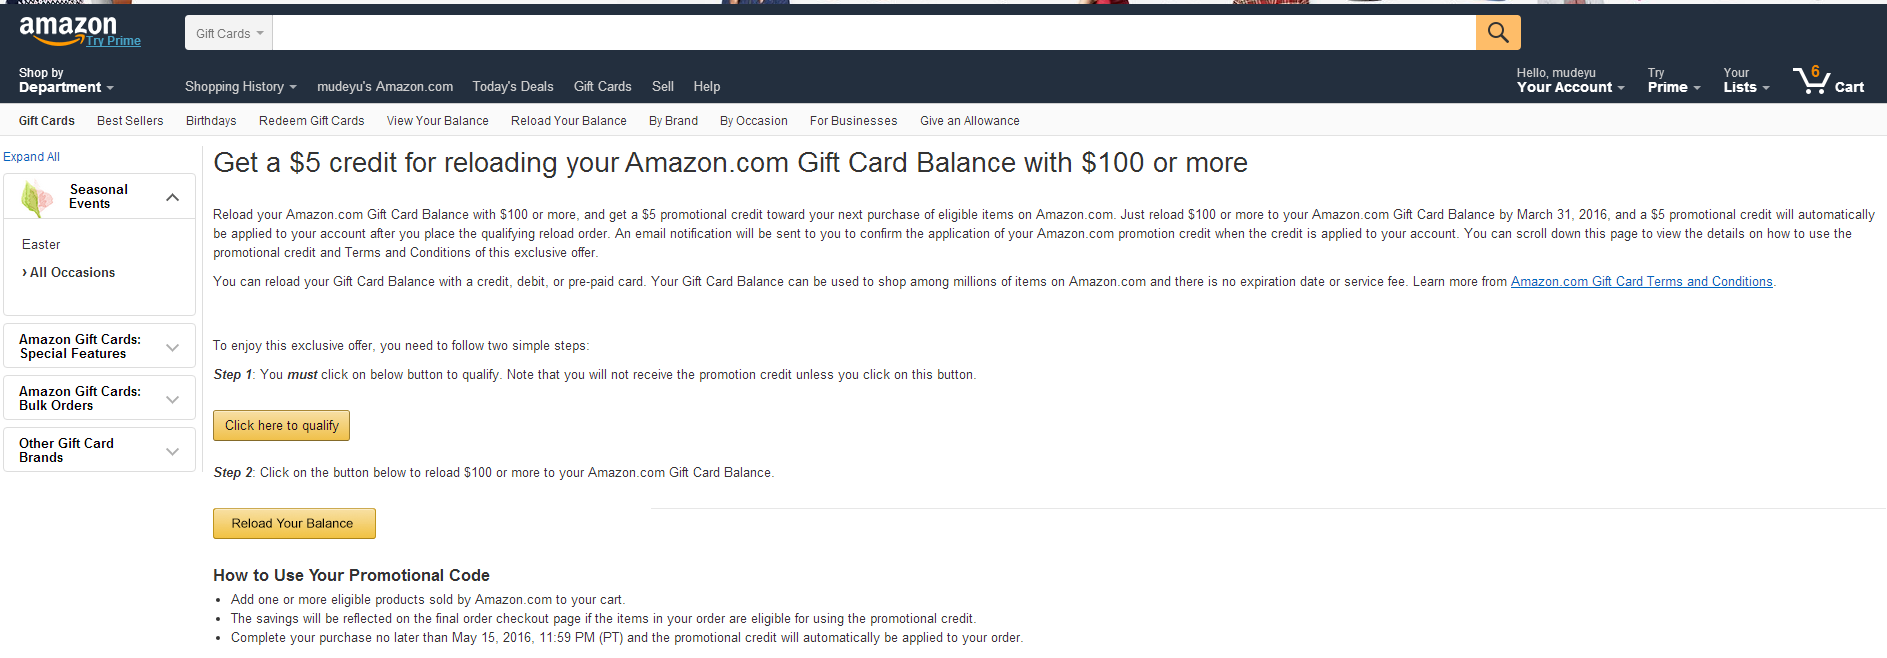 美国亚马逊 礼品卡 买$100送$5_美国亚马逊优惠